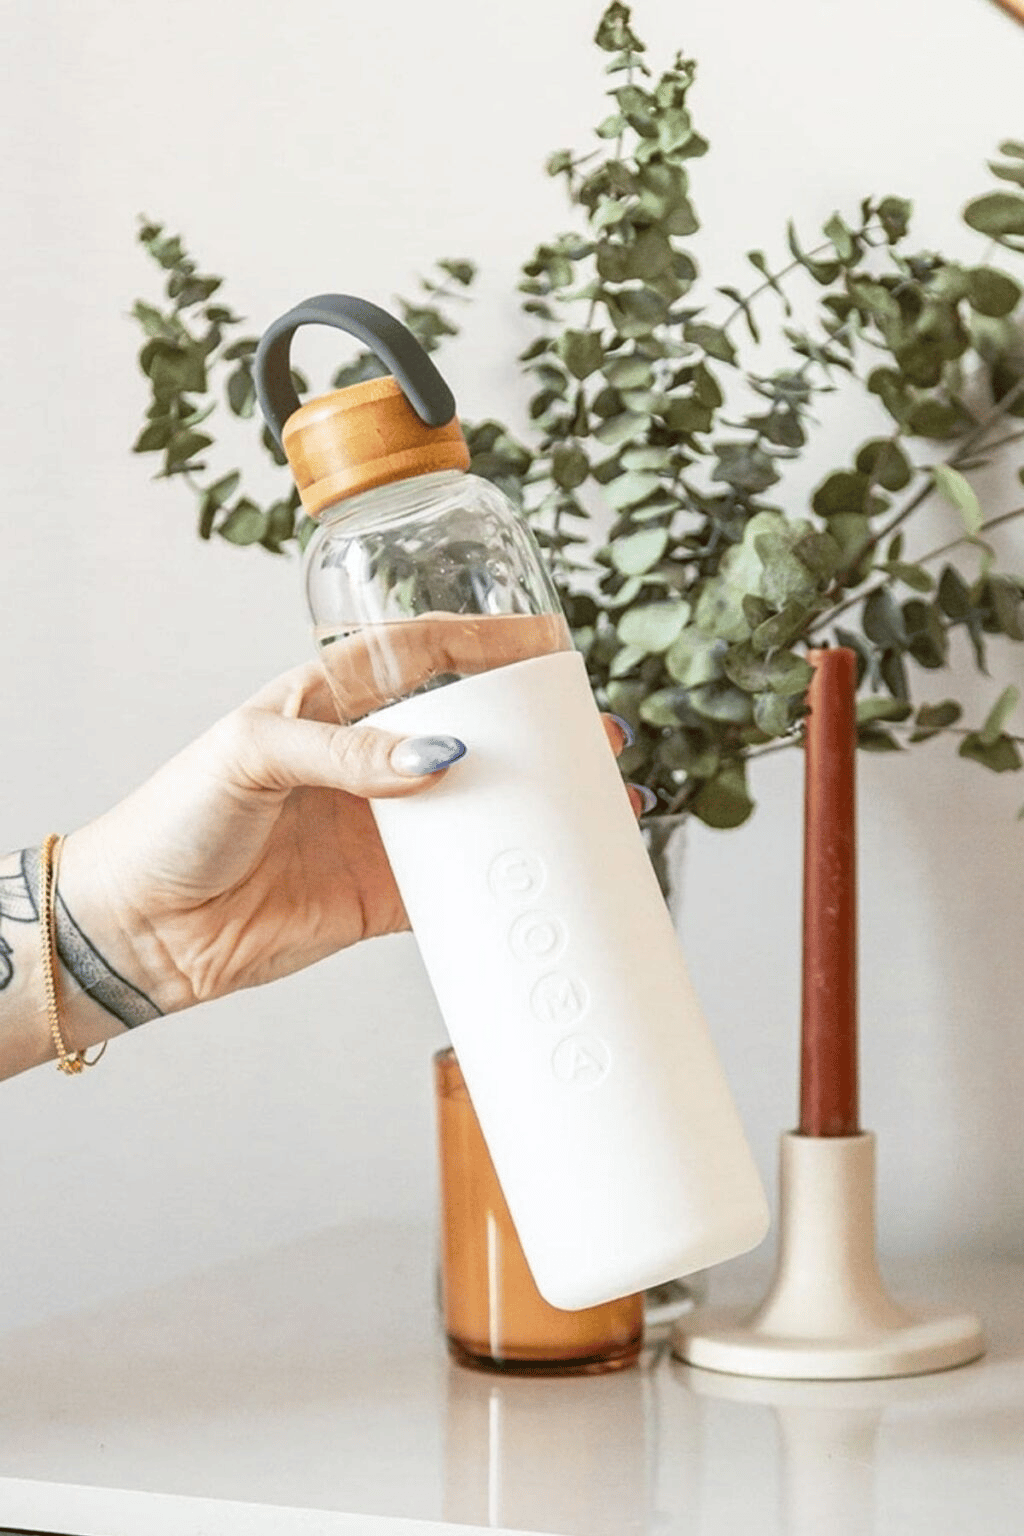 12 Best Reusable Water Bottles to Buy